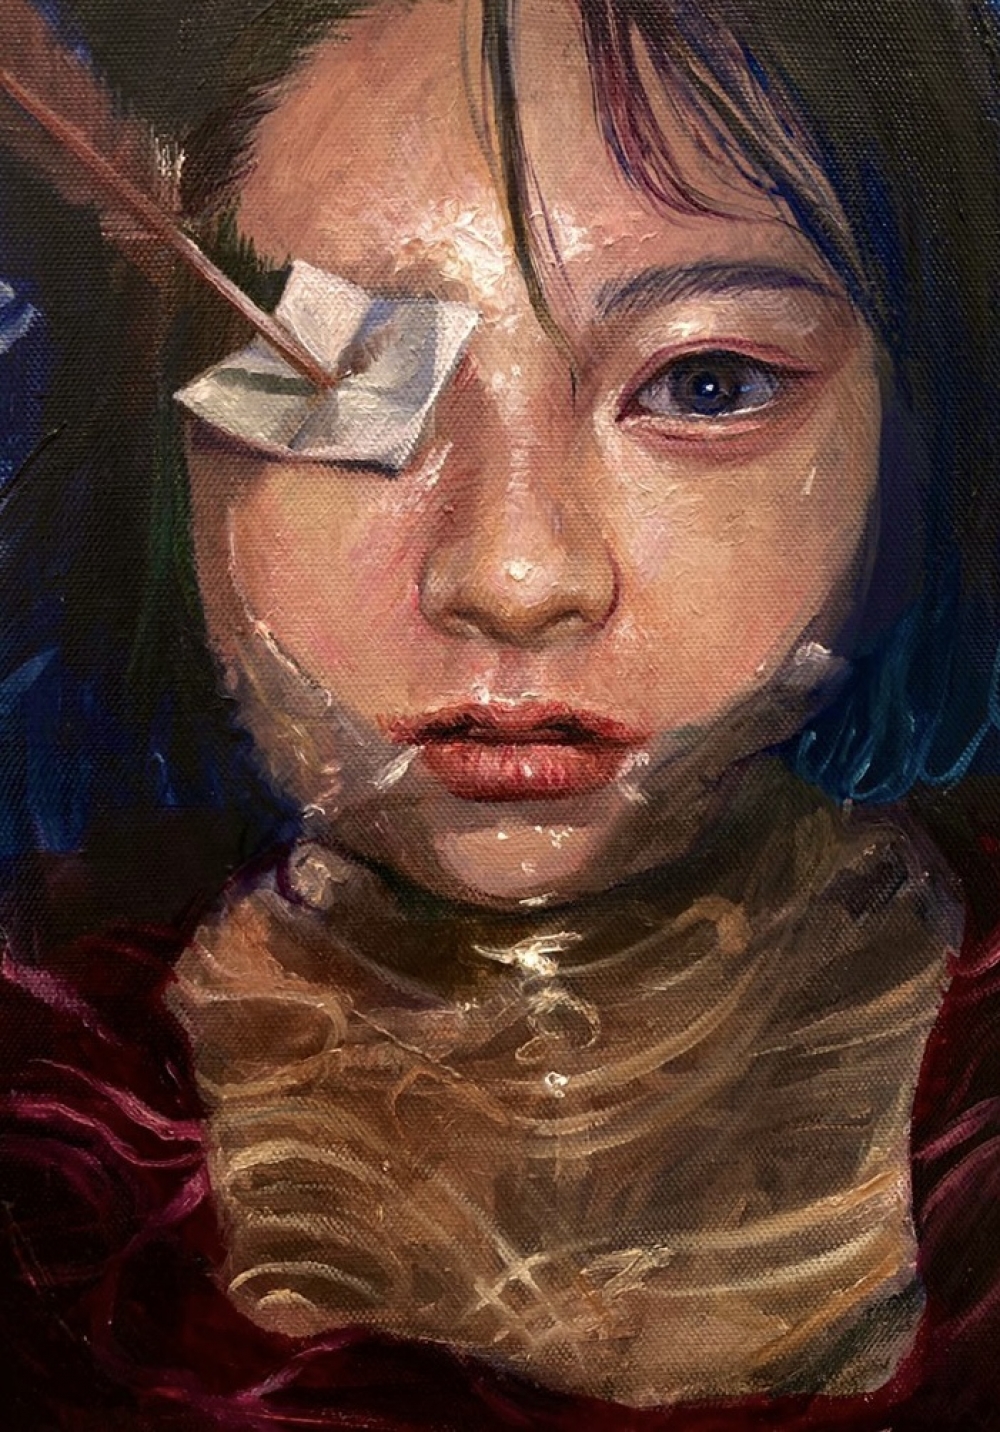 Tomoka Horaguchi/One Eye/exid45576wid43241